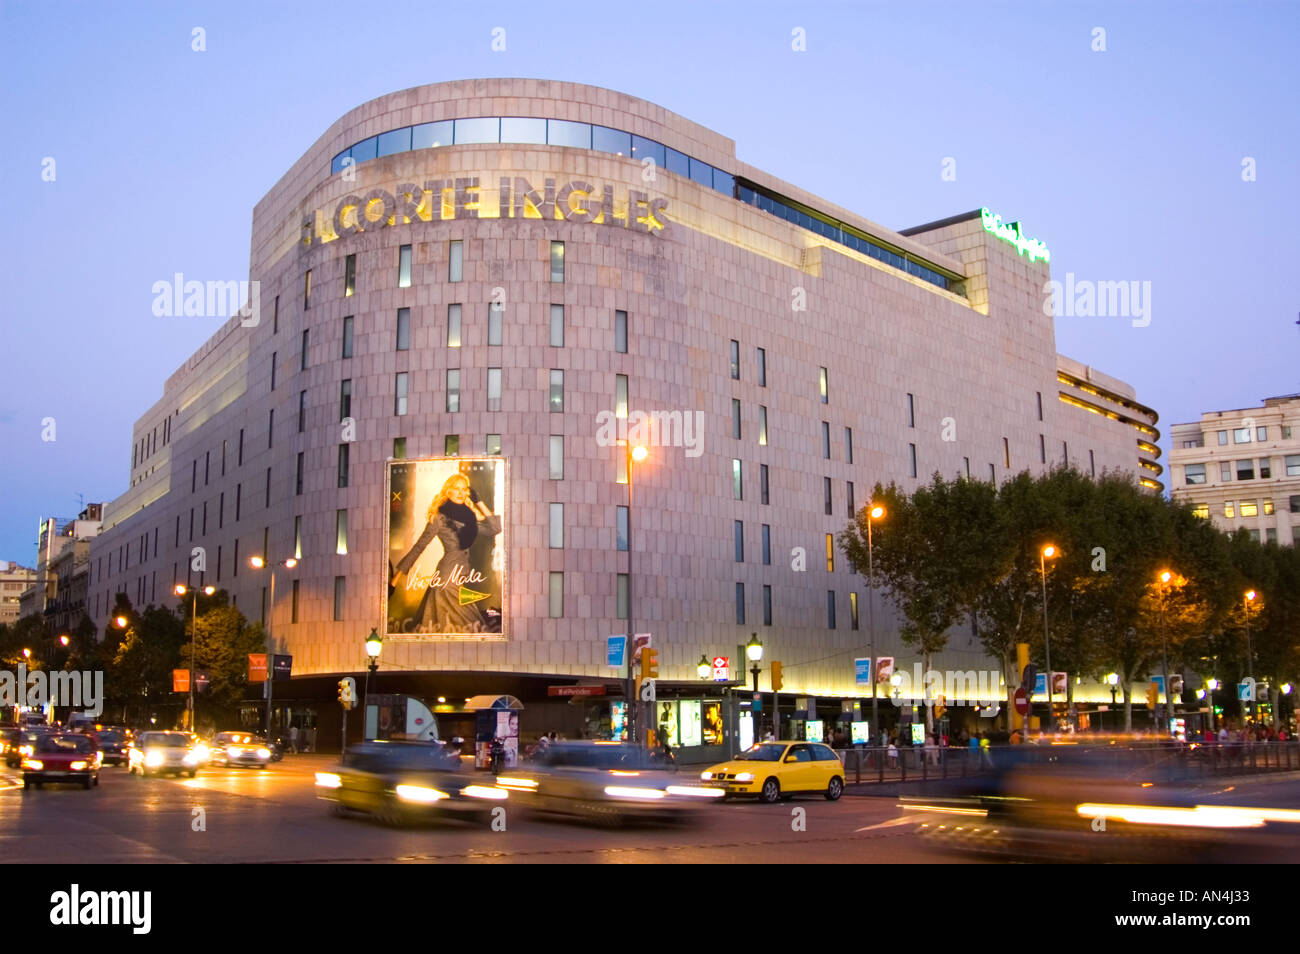 El Corte Inglés department store on Placa de Catalunya Barcelona Spain Stock Photo